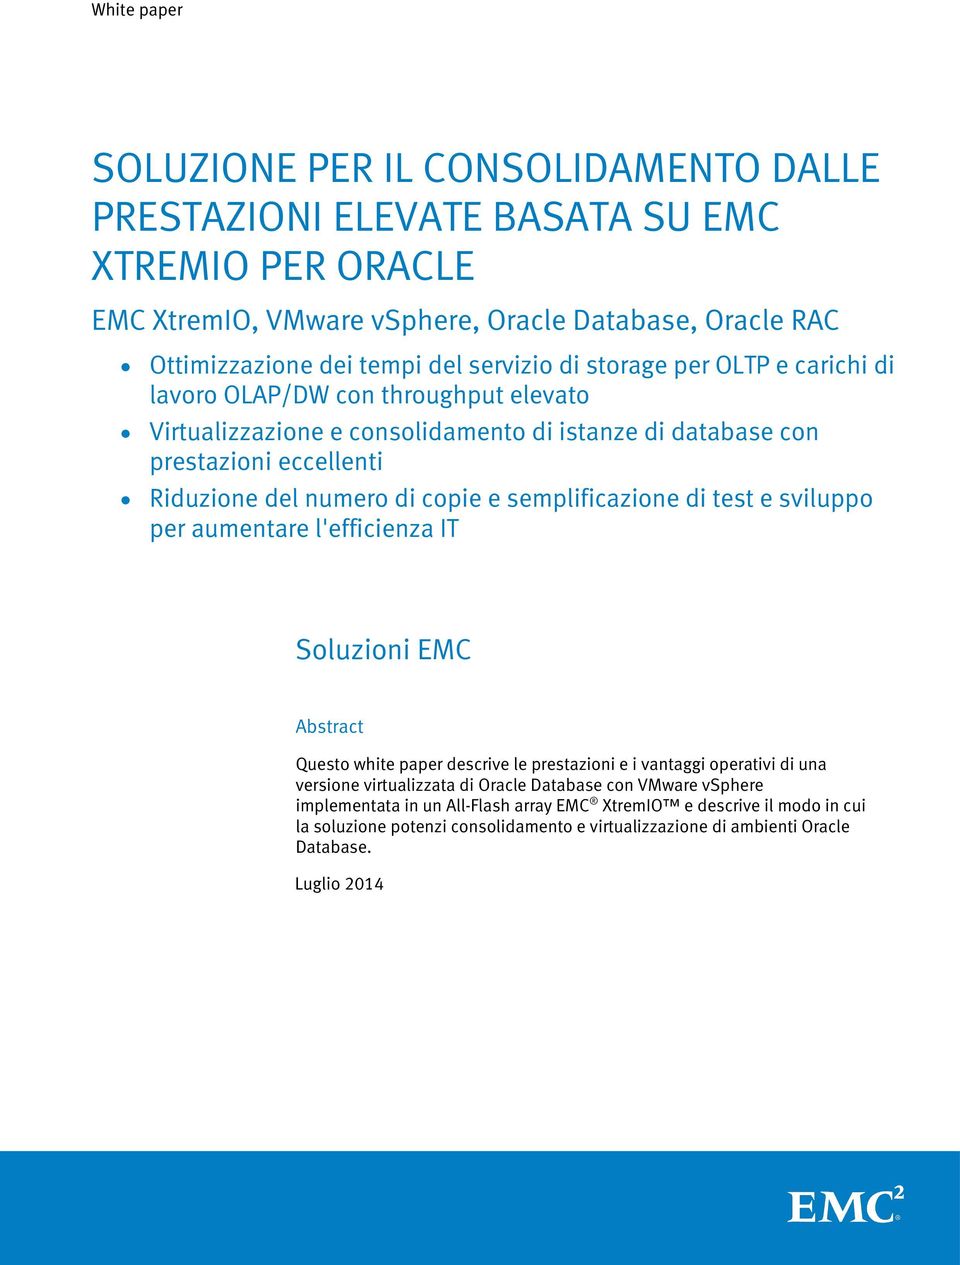 sviluppo per aumentare l'efficienza IT Soluzioni EMC Abstract Questo white paper descrive le prestazioni e i vantaggi operativi di una versione virtualizzata di Oracle Database